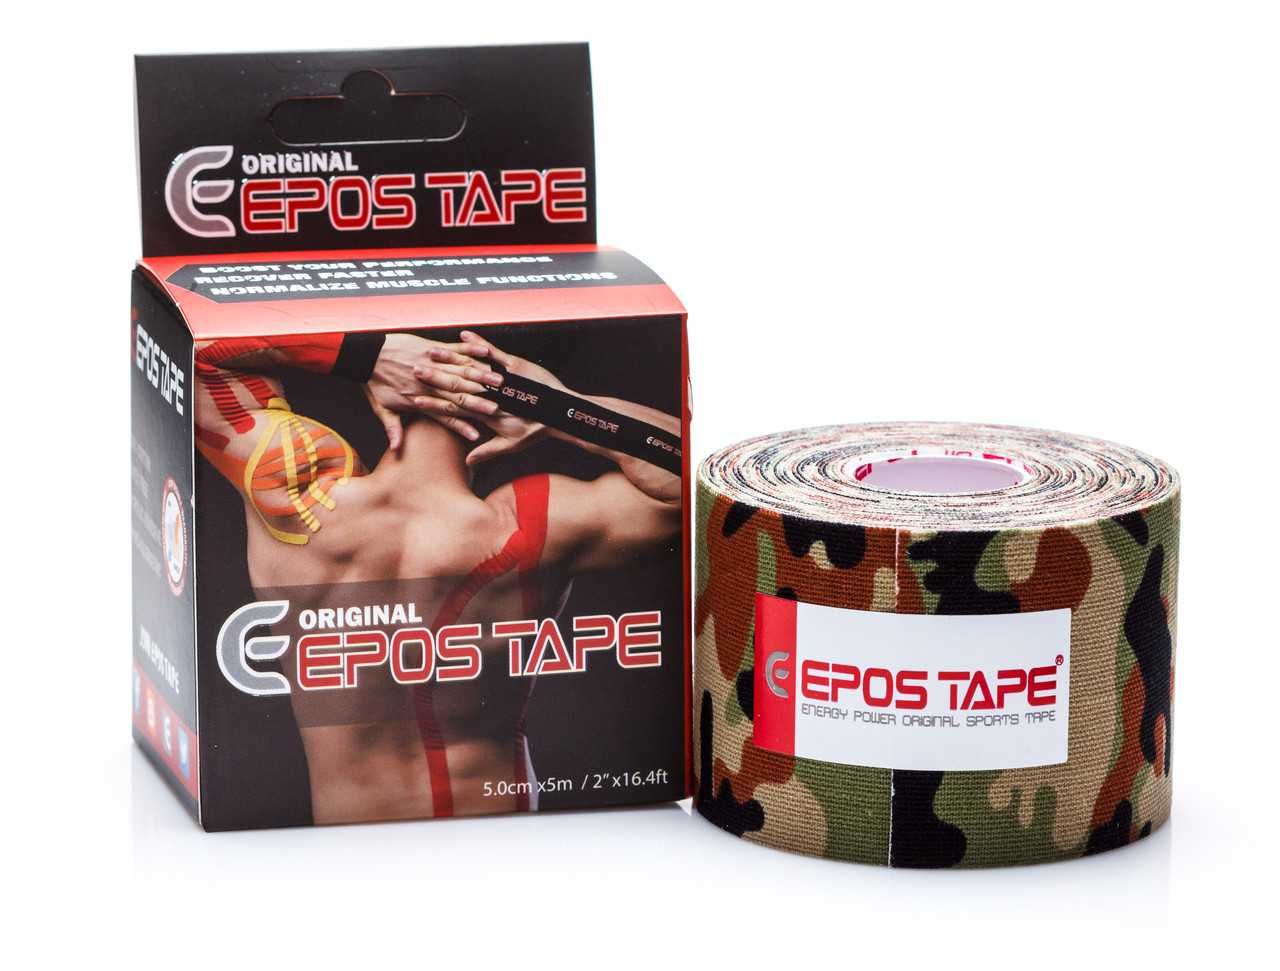 Кинезио тейп EPOS Tape (Южная Корея), оригинал